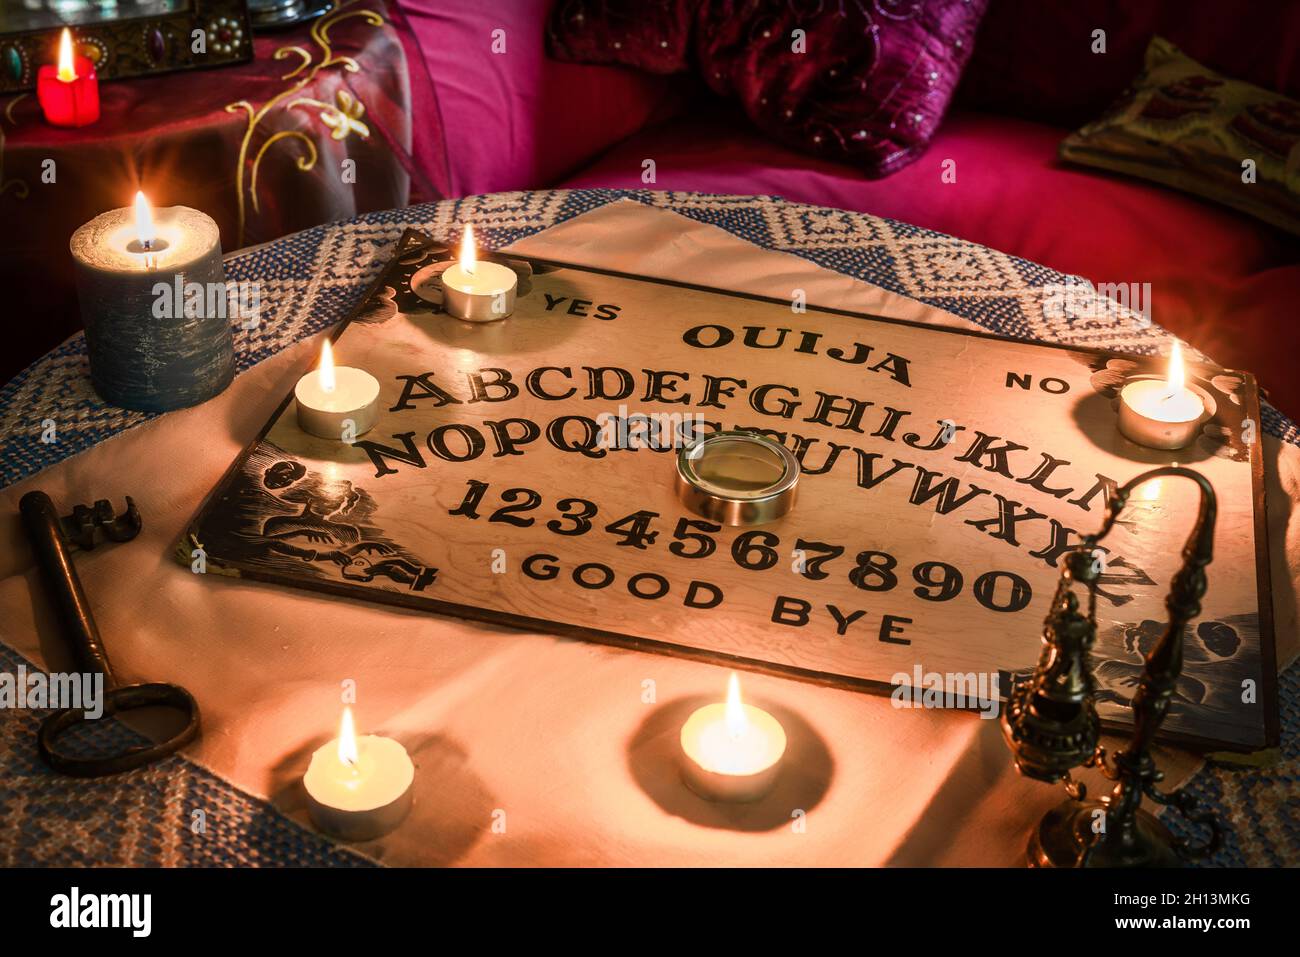 Spiritismus-Tisch mit einem Ouija-Brett und vielen brennenden Kerzen.  Esoterischer Seance an Halloween Stockfotografie - Alamy